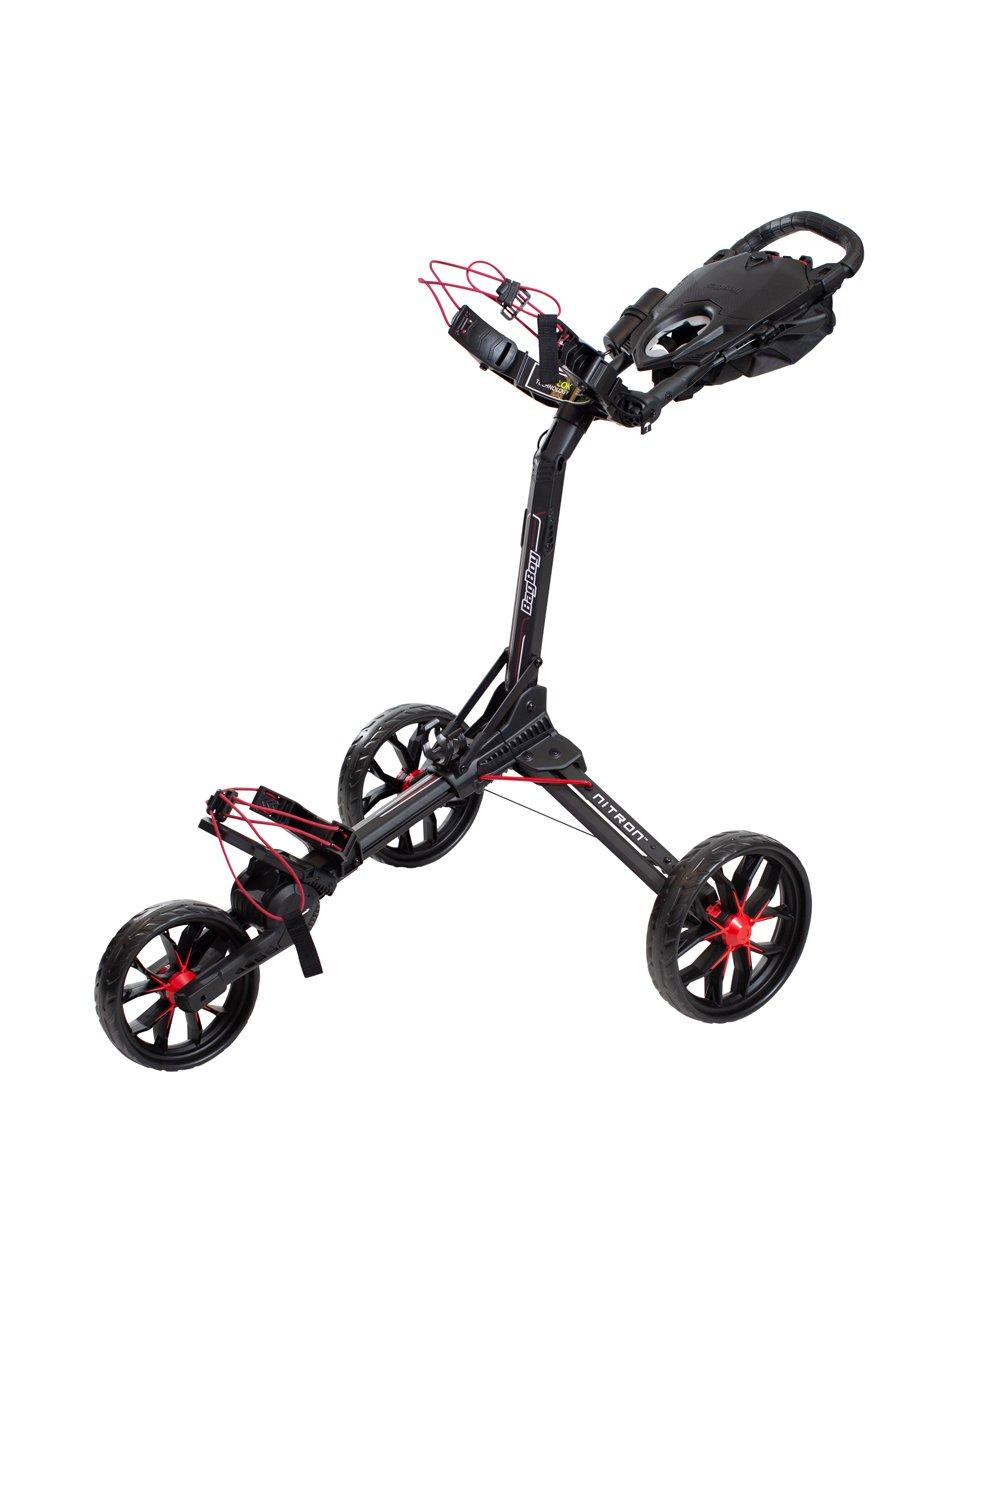 Nitron Push Cart | BAG BOY | Push & Pull Carts | Unisex | Golf